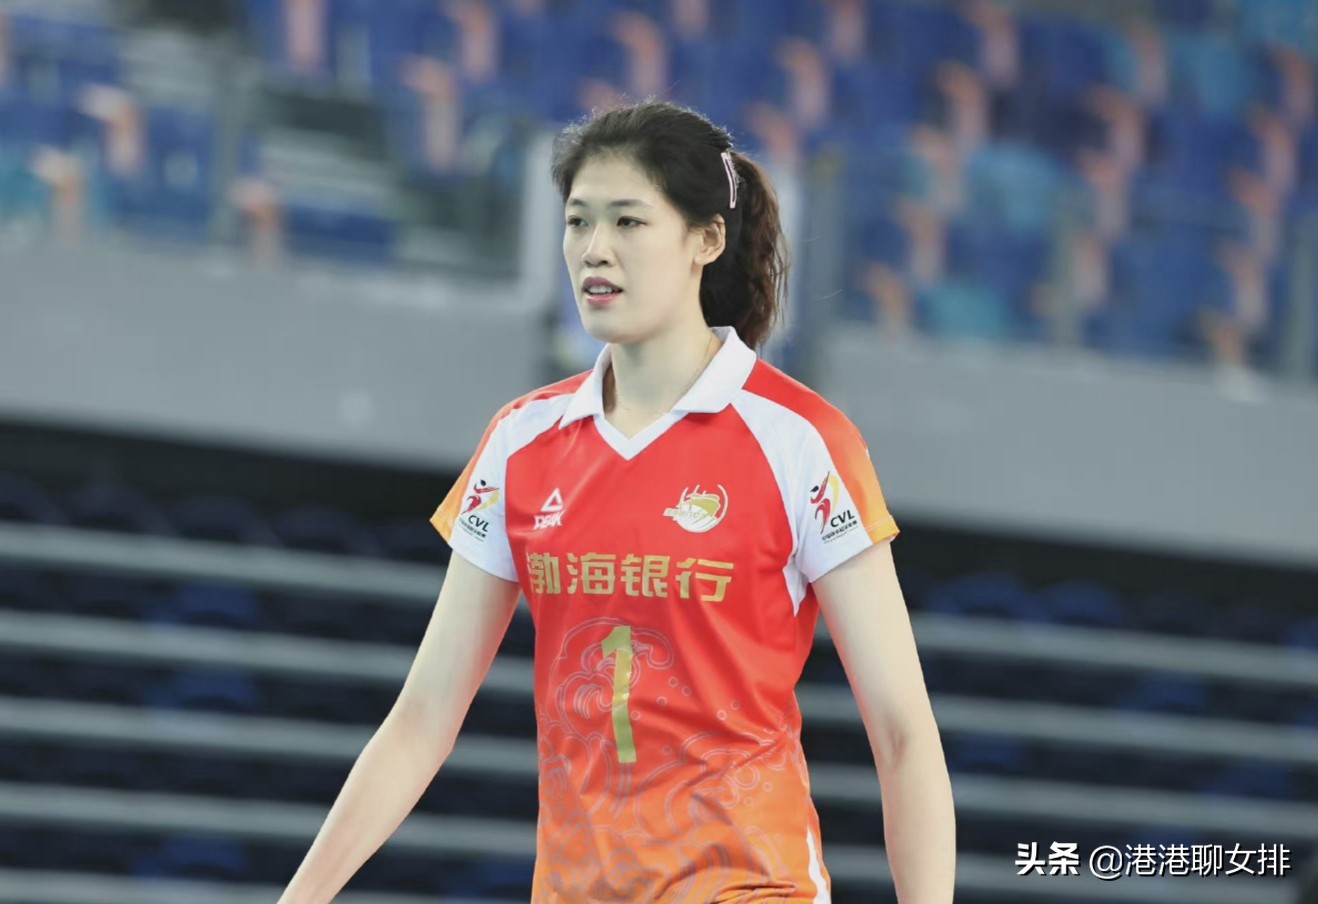 中国女排名单,2004年奥运会中国女排名单